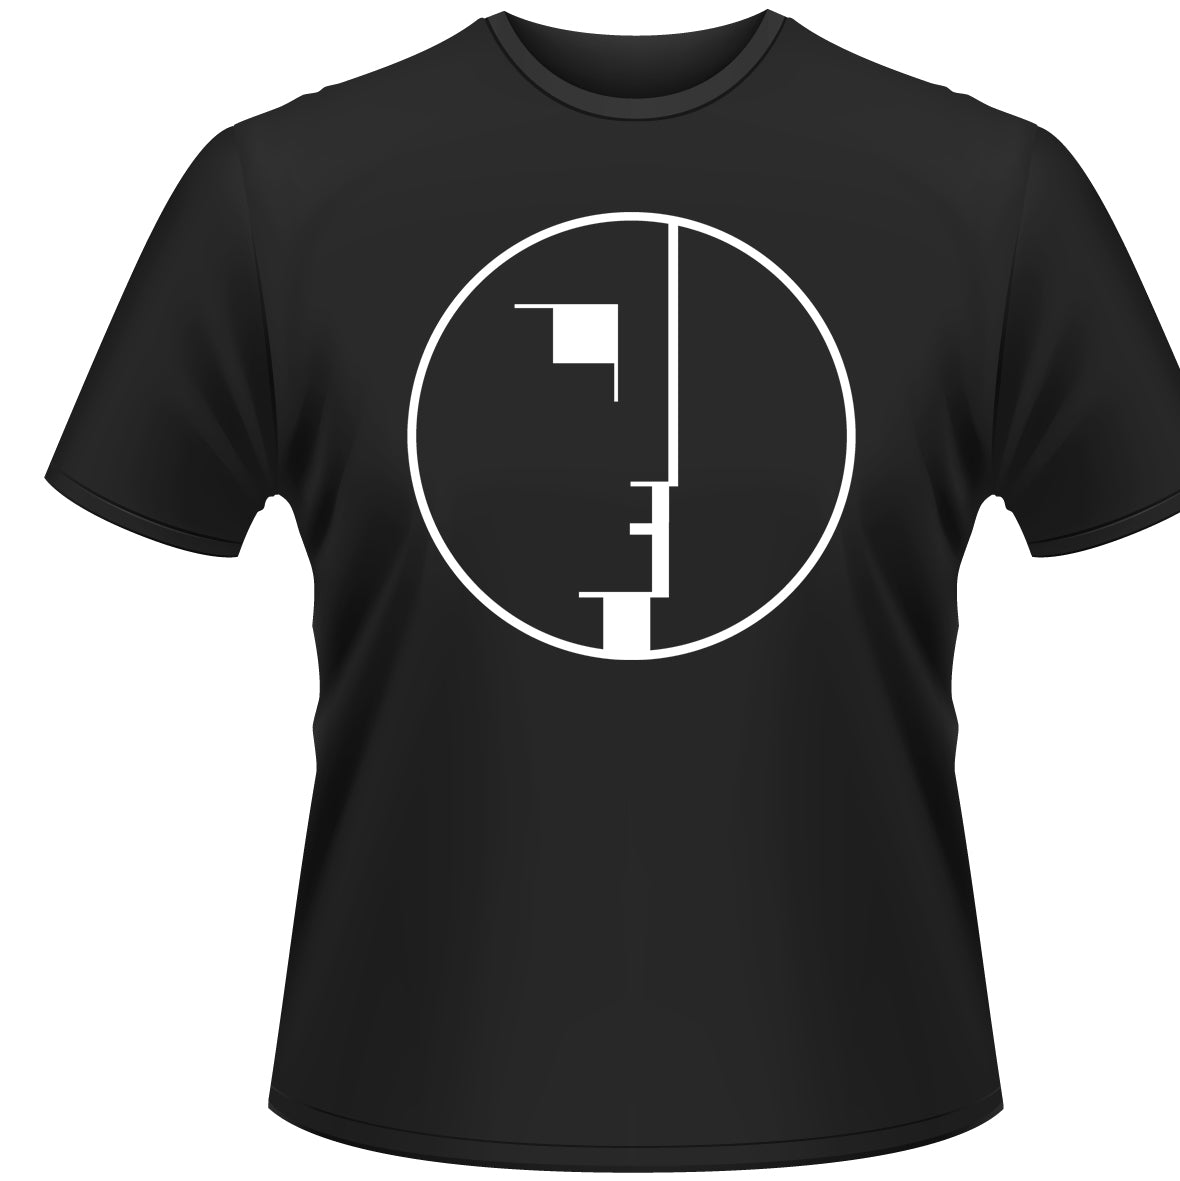 Bauhaus "Logo" Black T shirt